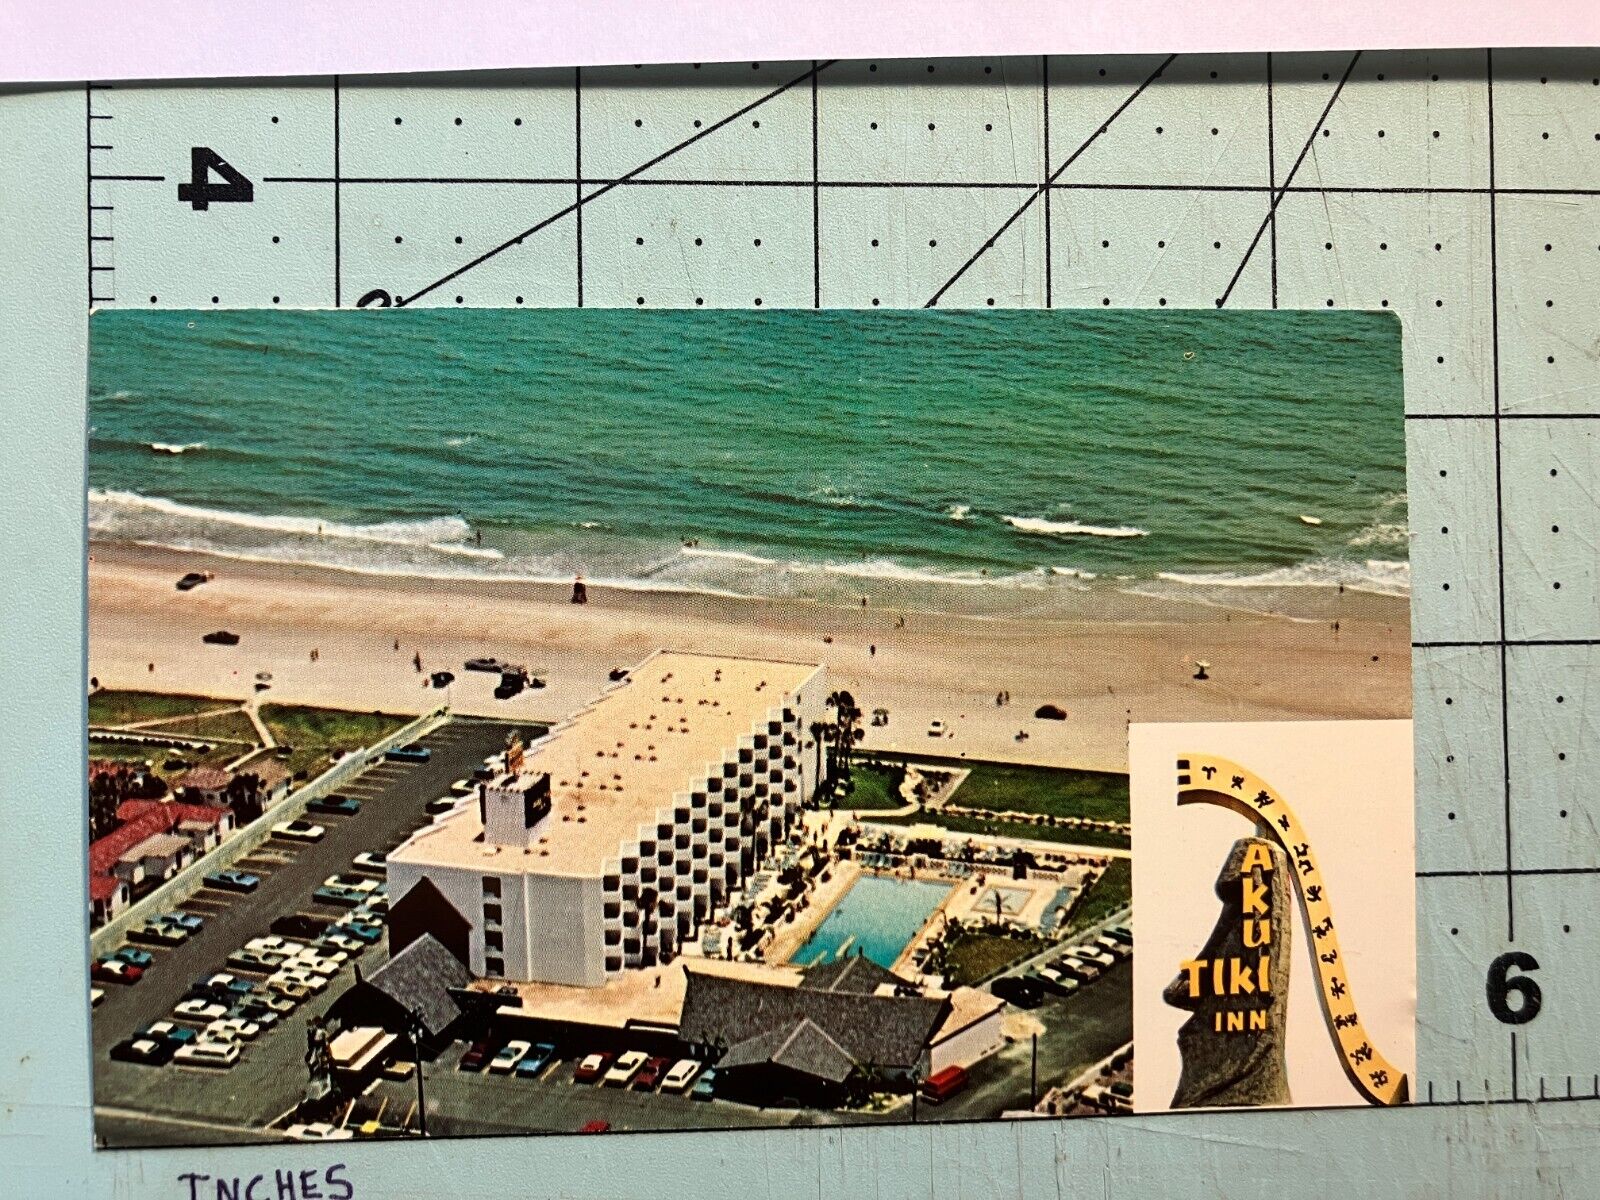 Vintage Aku Tiki Inn Postcard - Daytona Beach Shores  Florida -